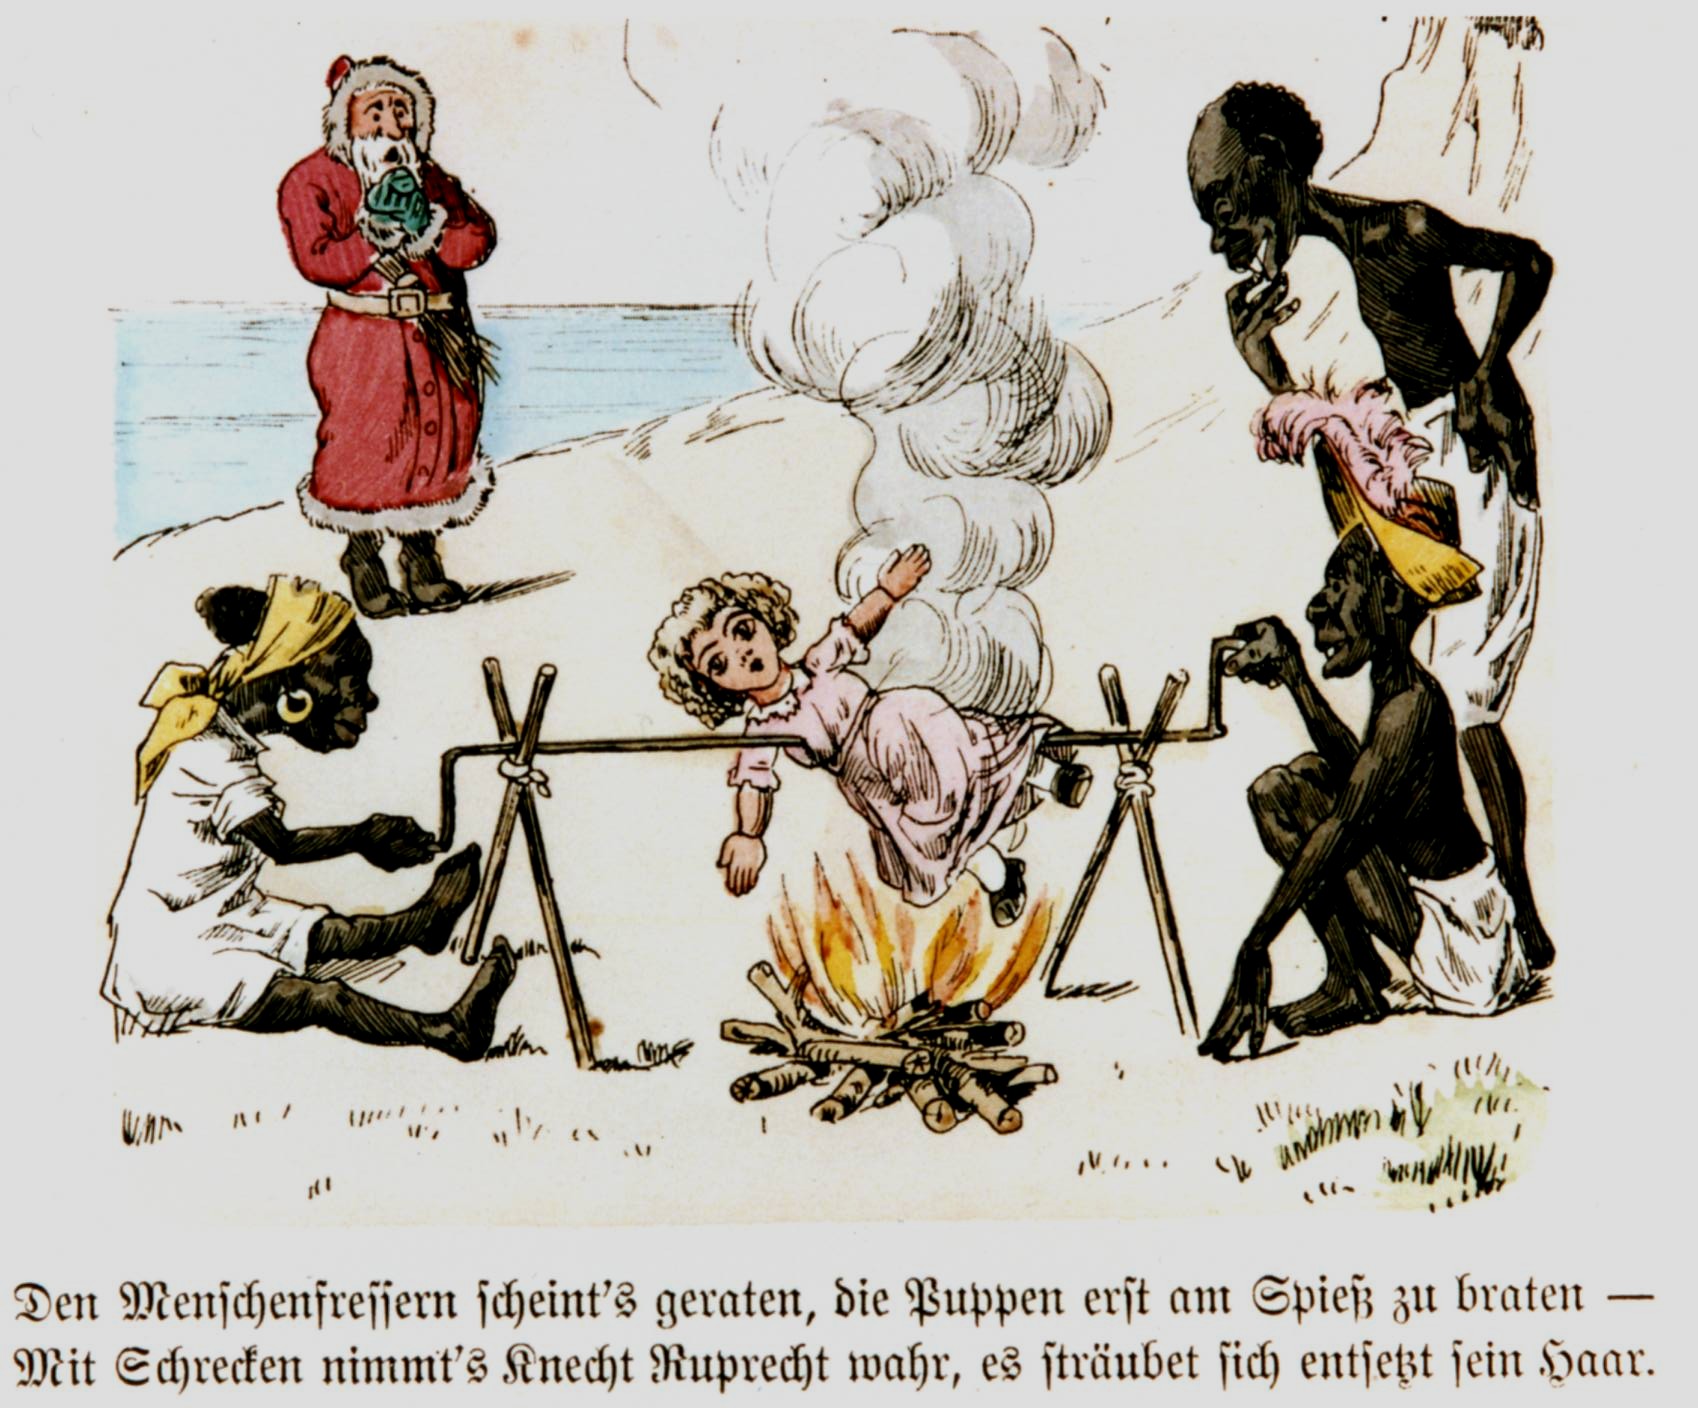 Szenen aus dem rassistischen Bilderbogen Knecht Ruprecht in Kamerun, um 1890 (Kamerun war damals eine deutsche Kolonie)